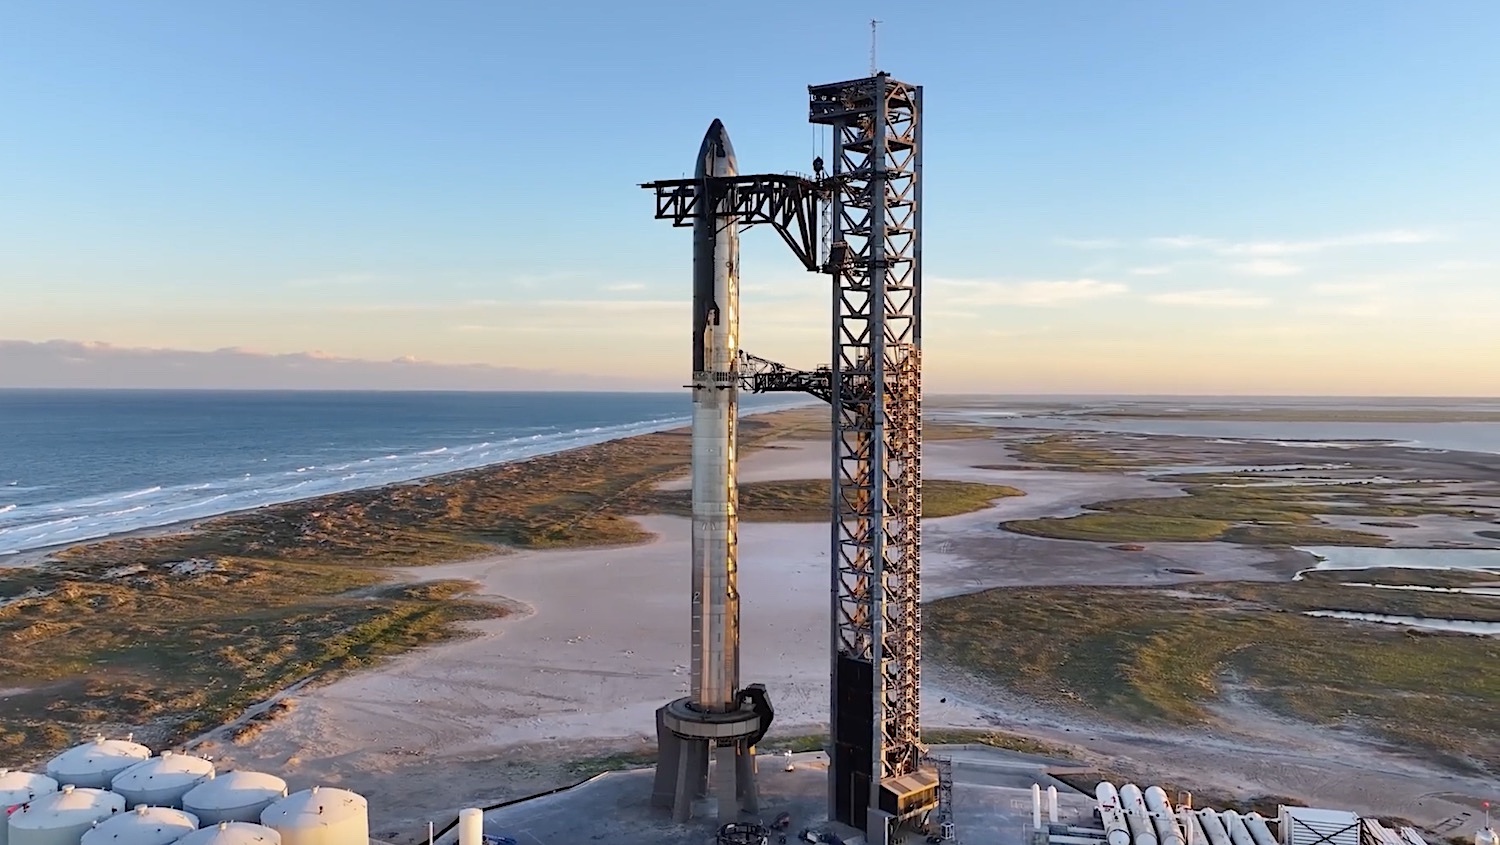 SpaceX запросила у FAA разрешения как минимум на 9 тестовых запусков Starship в этом году